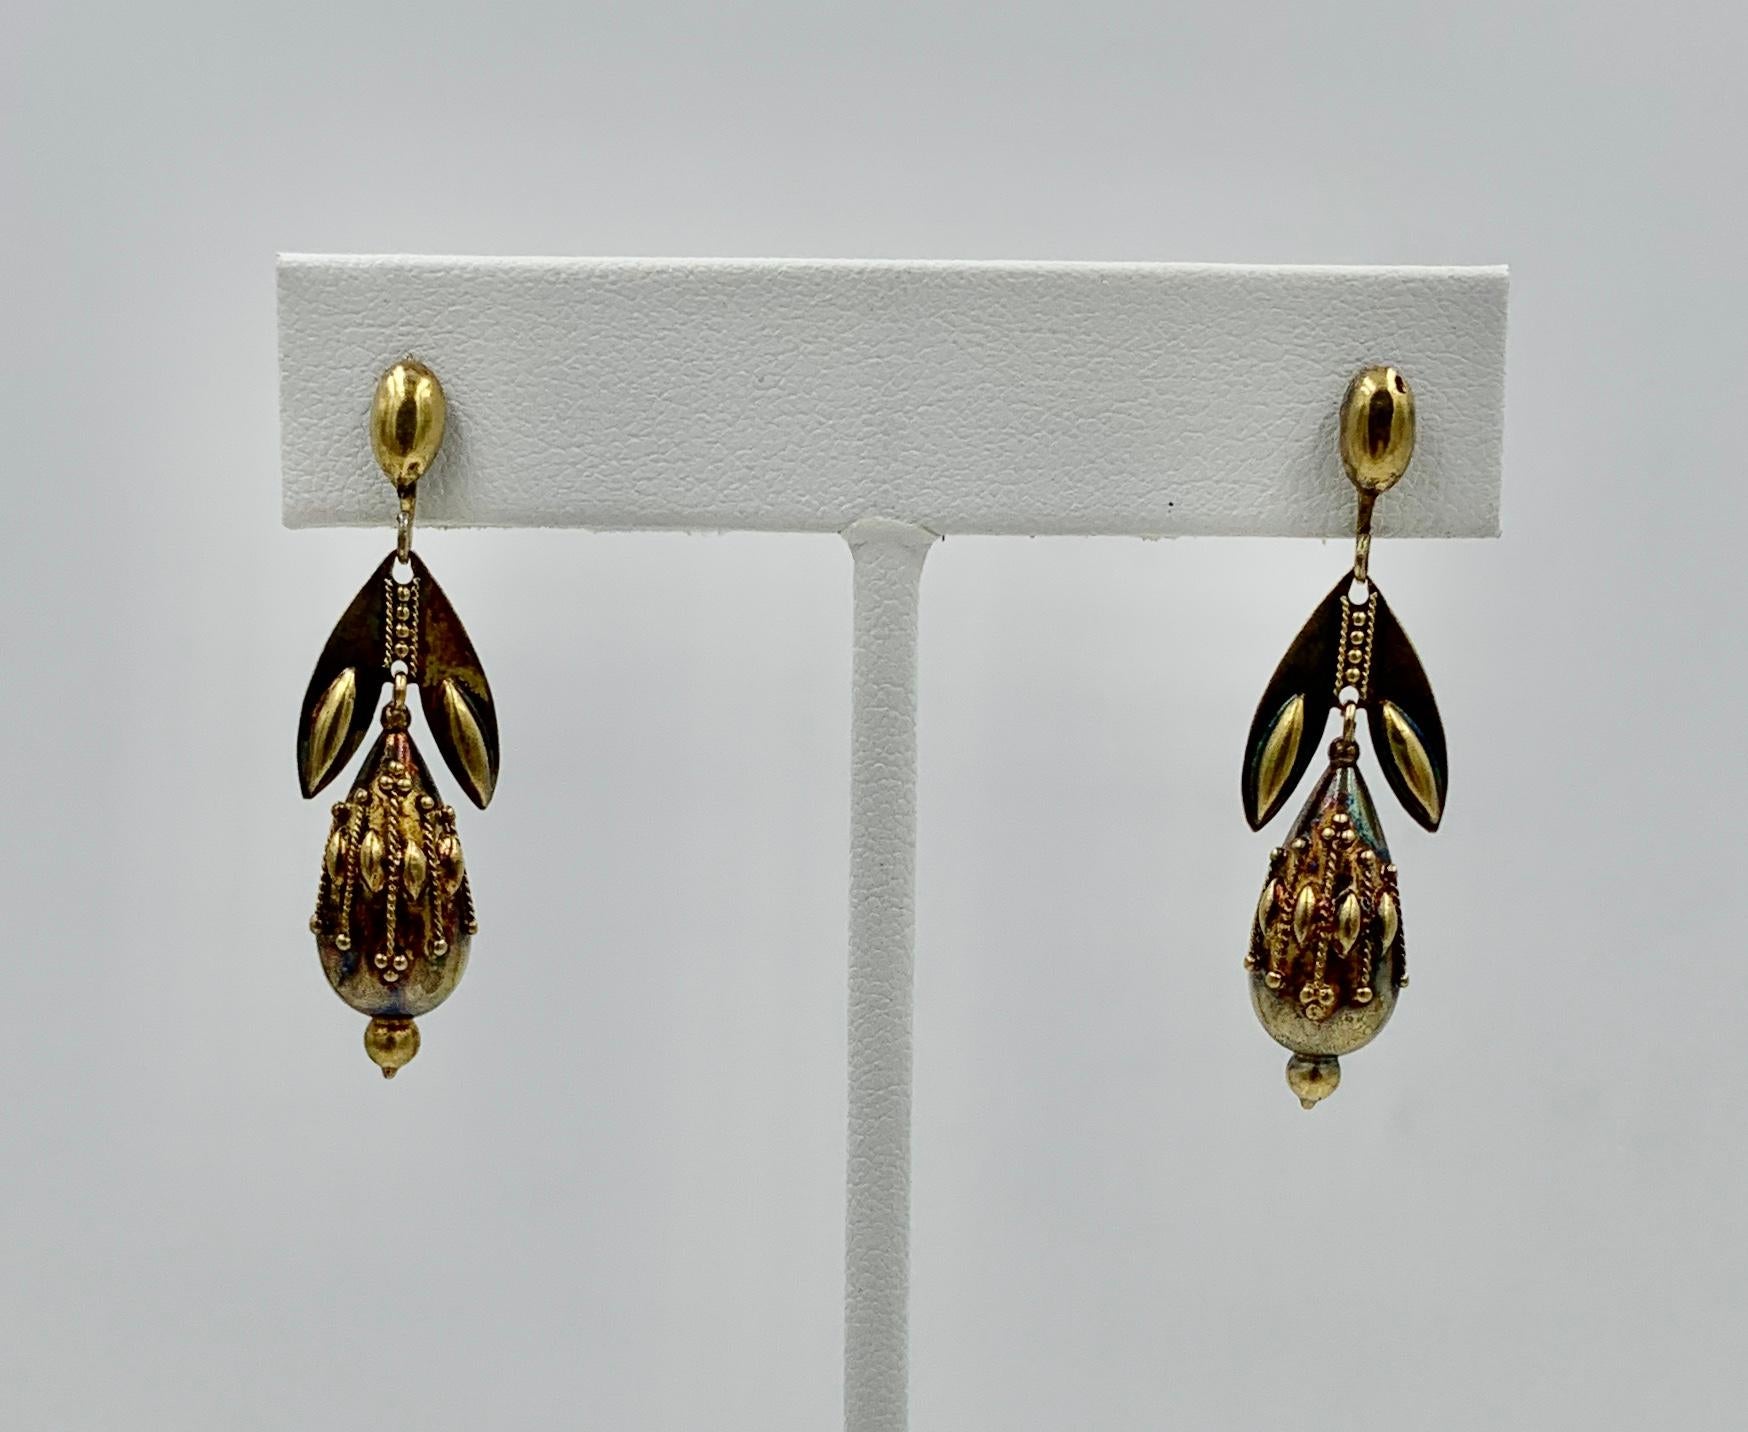 1860s earrings